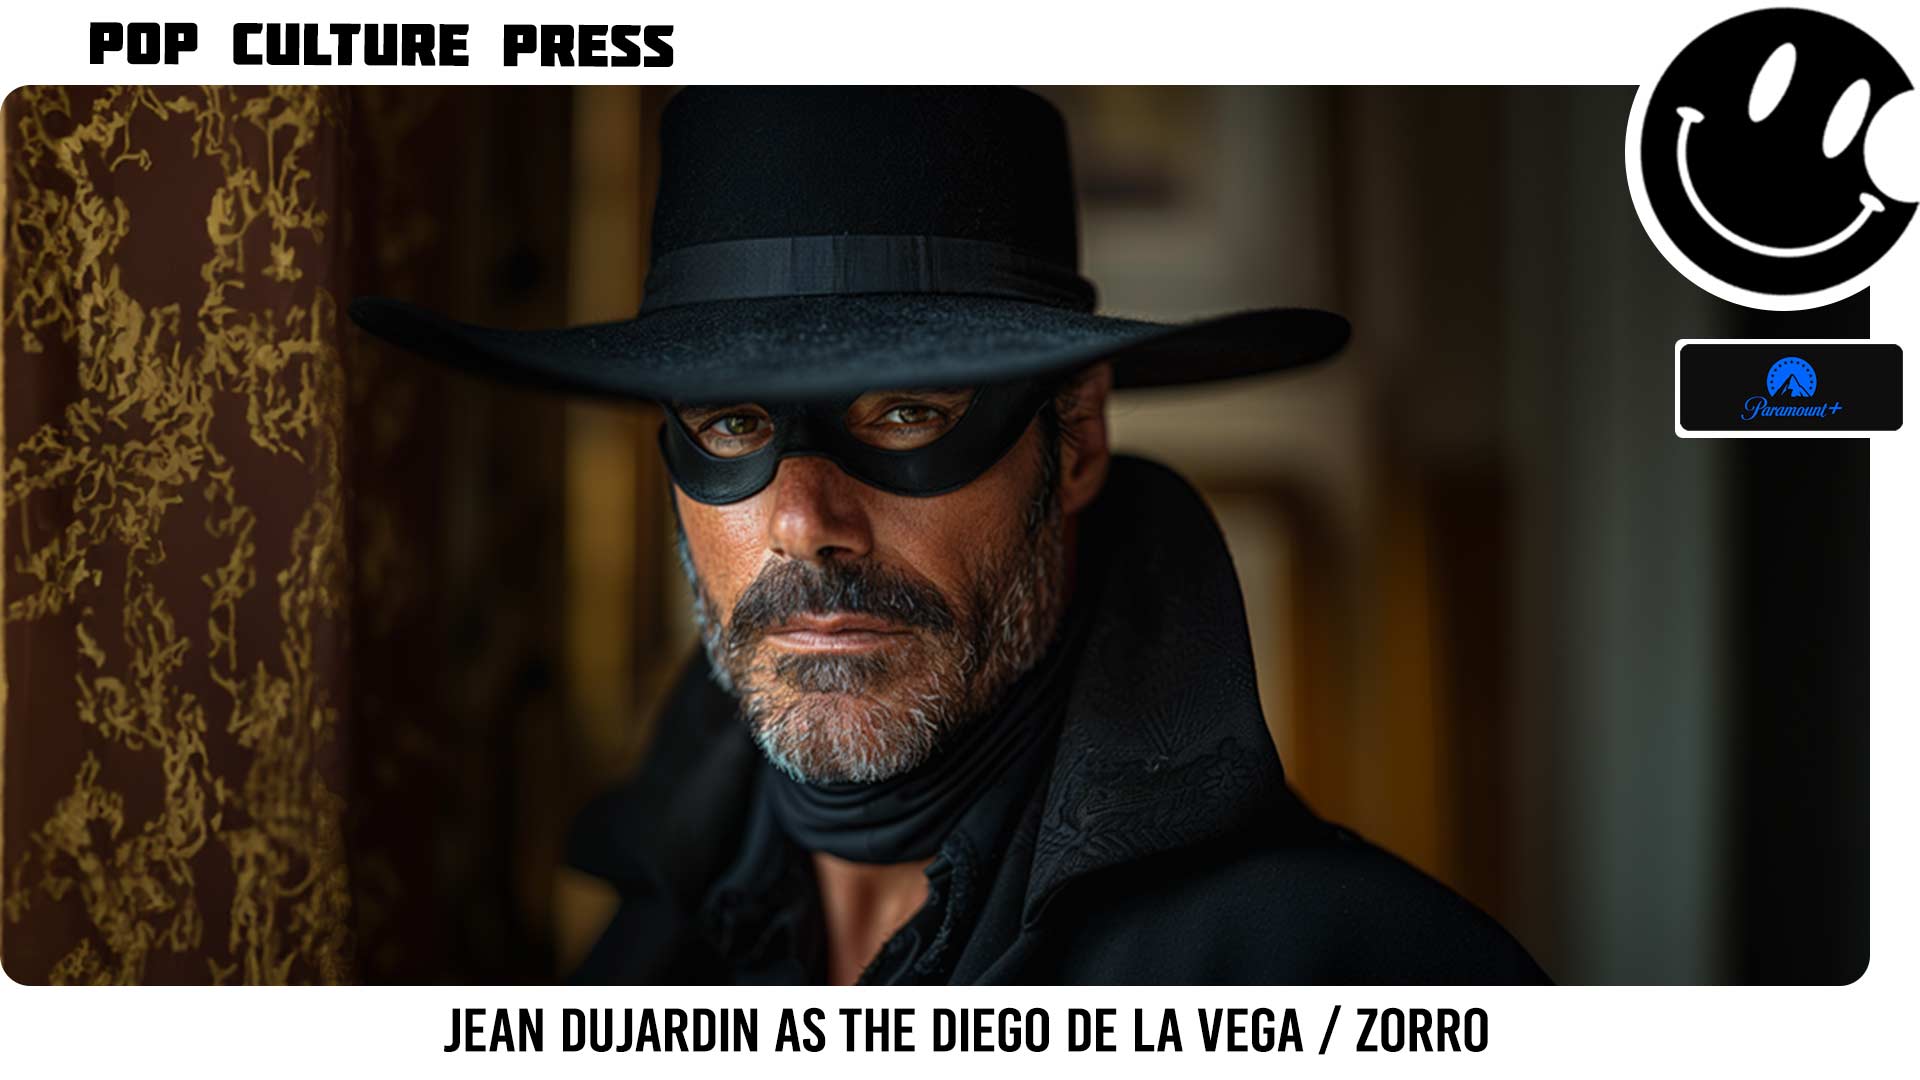 Oscar winner Jean Dujardin as Diego de la Vega. Zorro!